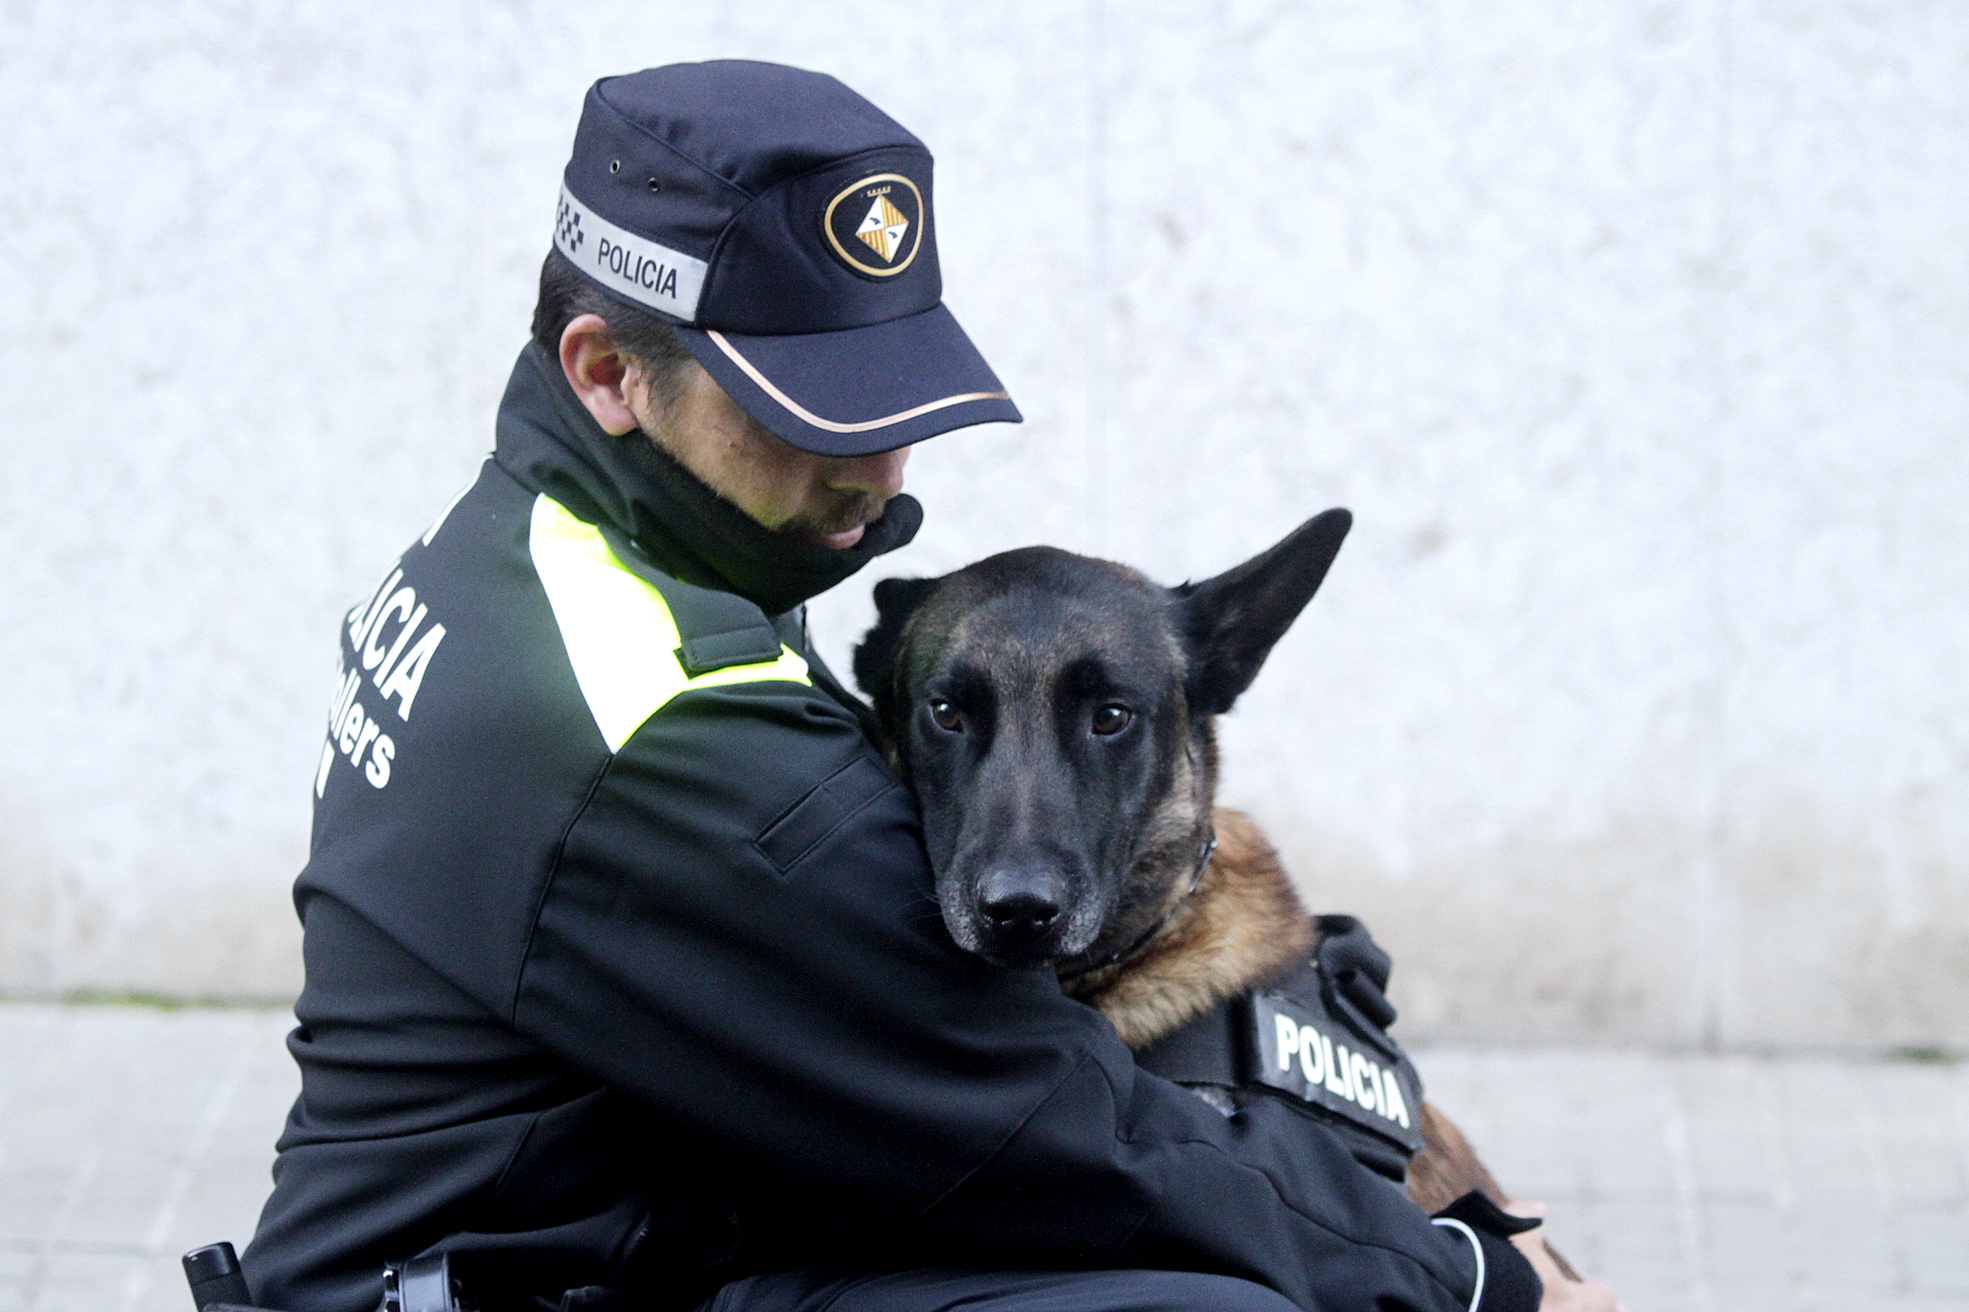 En Jaume amb en Bosco, el gos que formarà part de la dotació de policia de barri